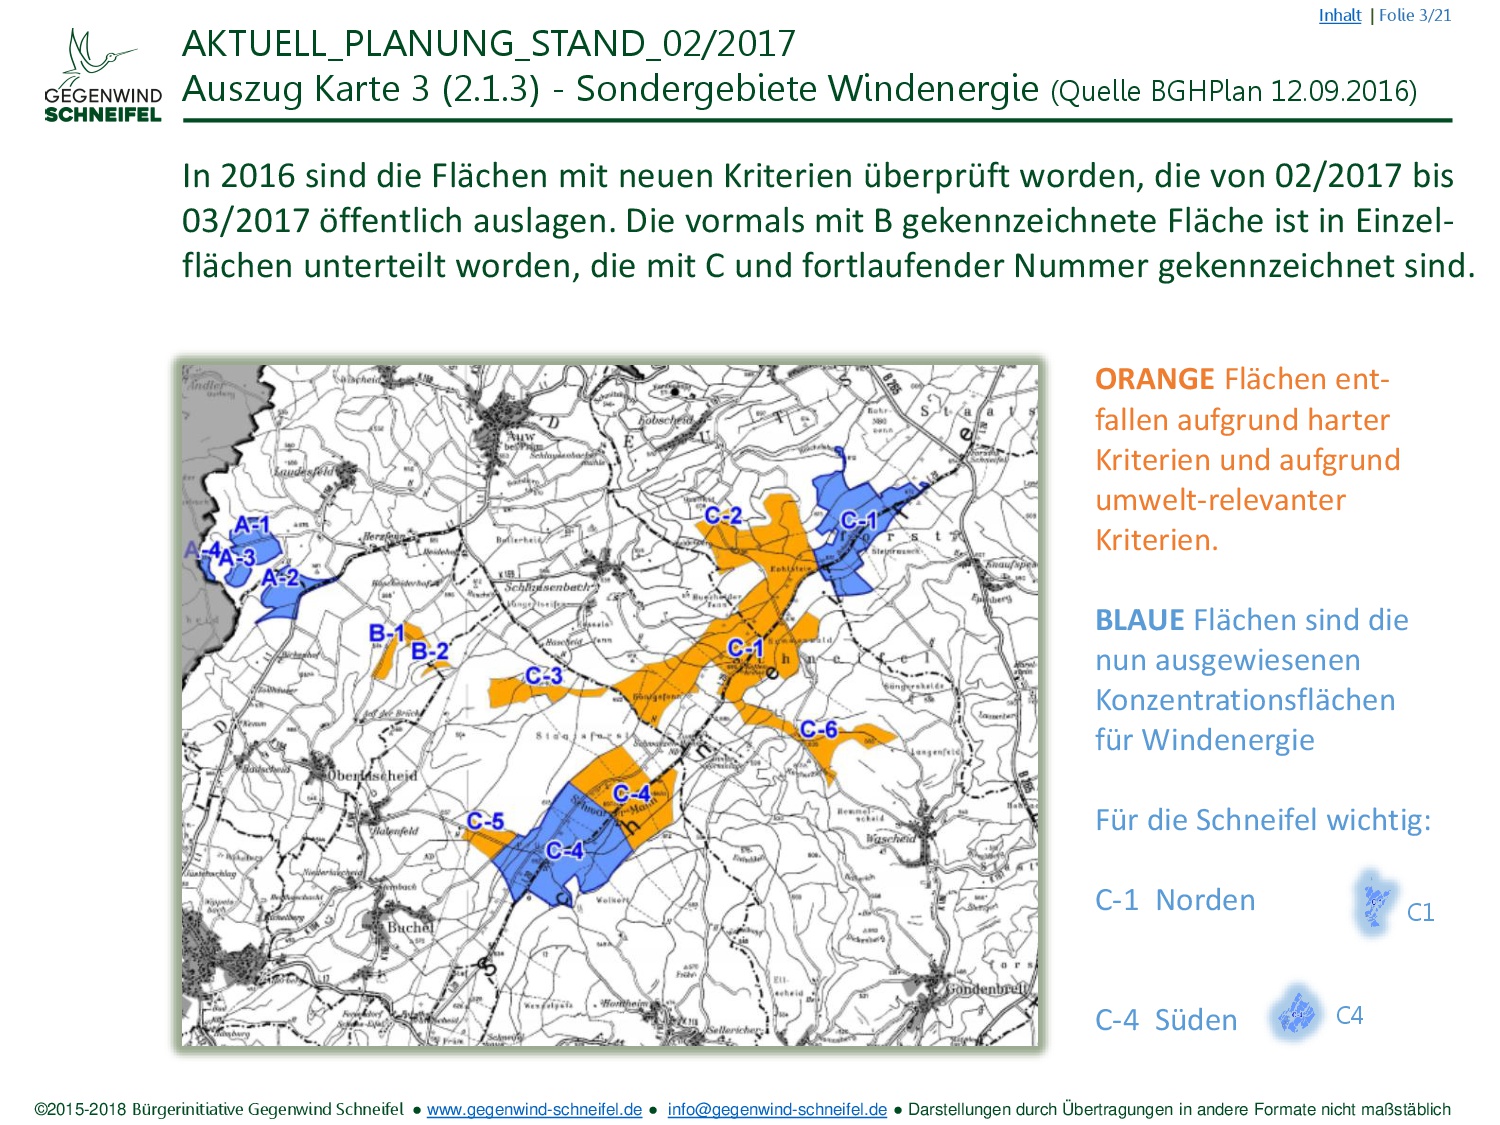 FNP Schneifel C1 C4 BiGWS C2018 (03 22) (Sondergebiete Windkraft 2017)